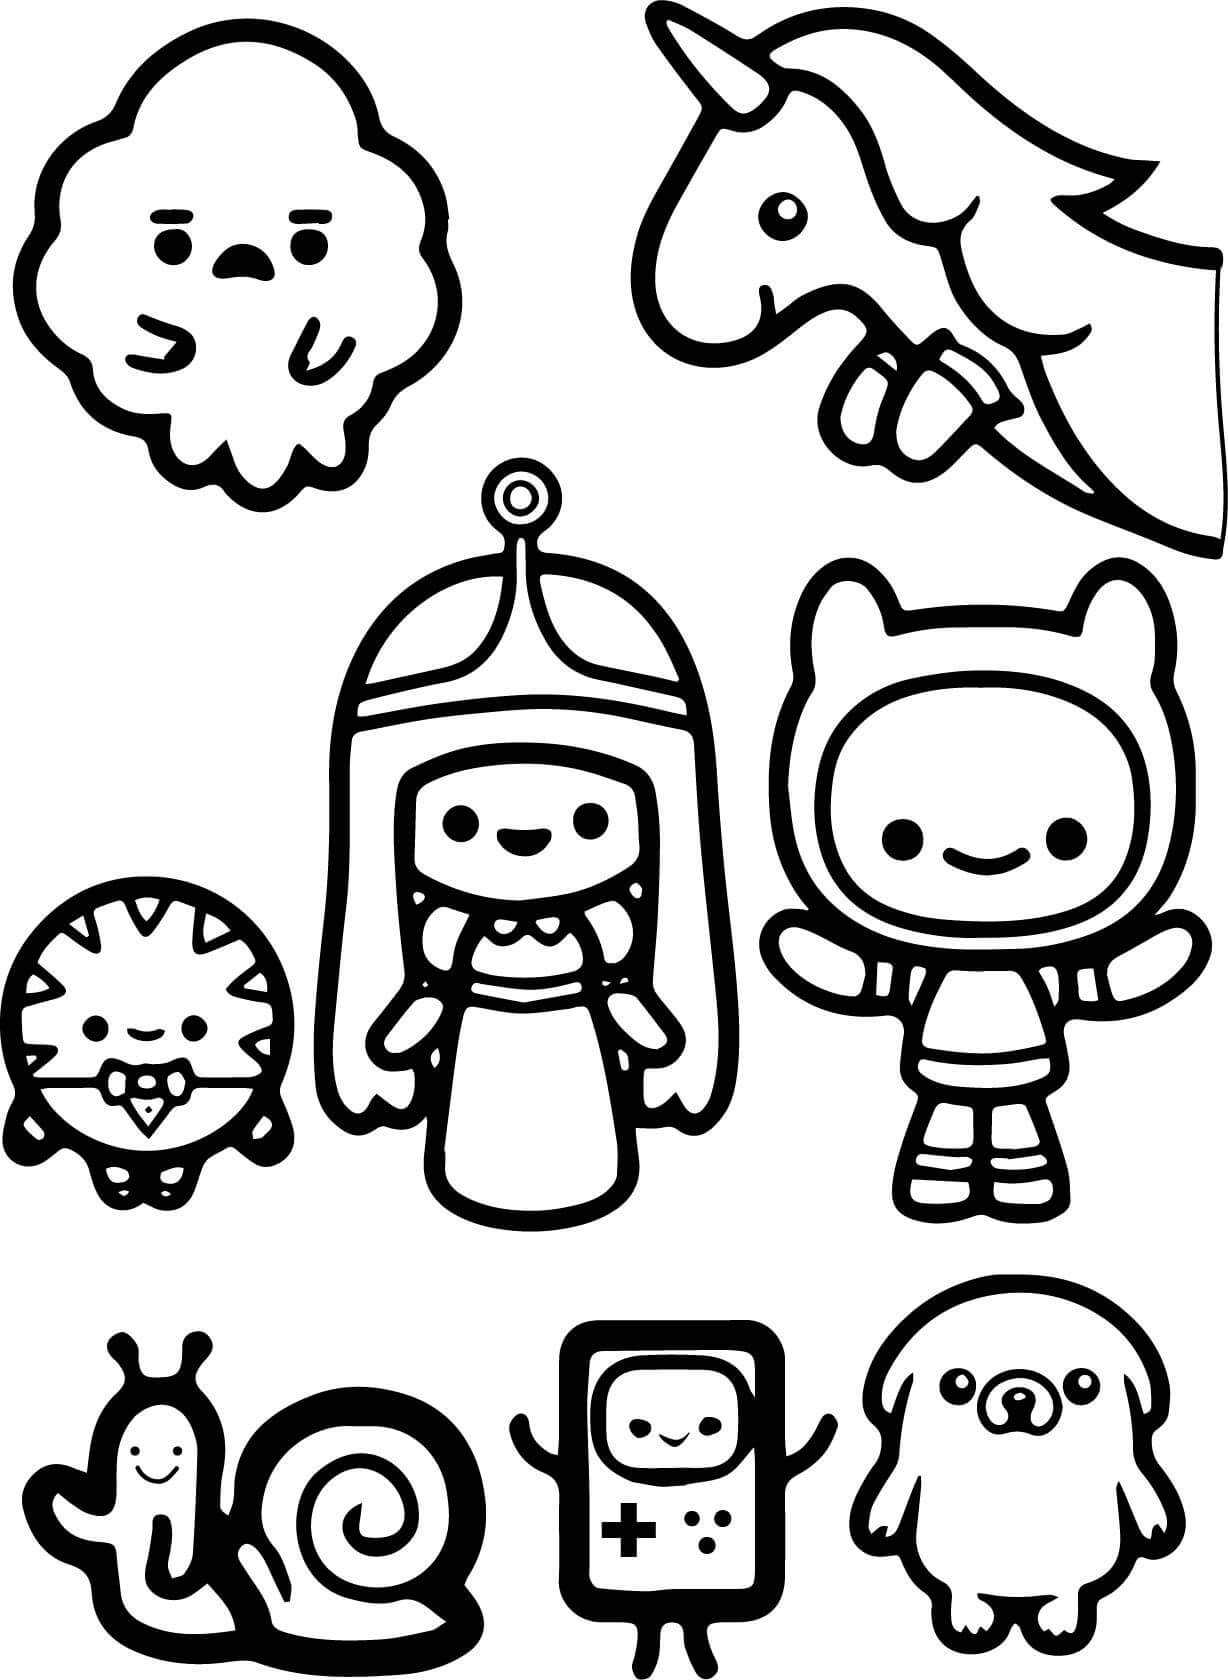 Desenhos de Personagens do Adventure Time Chibi para colorir